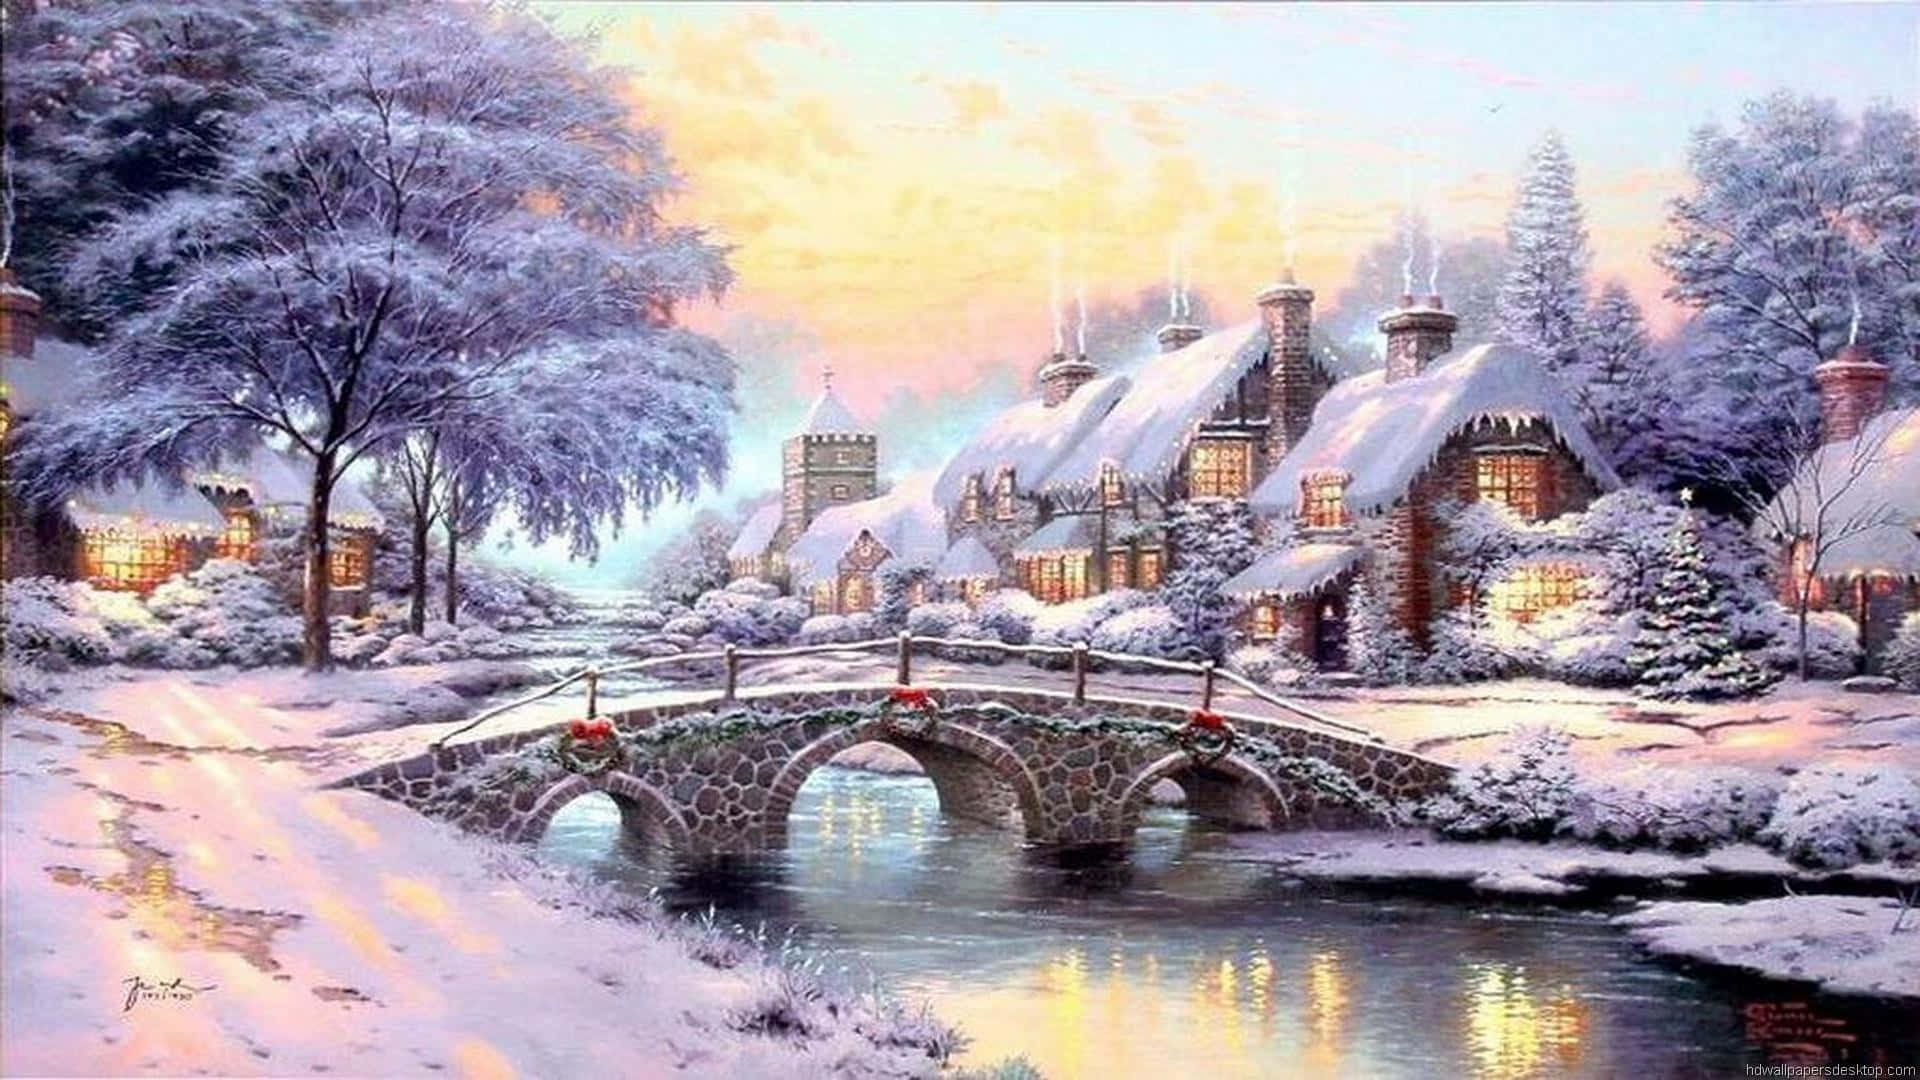 Et maleri af et snefyldt landsby med en bro, der strækker sig over en flod Wallpaper